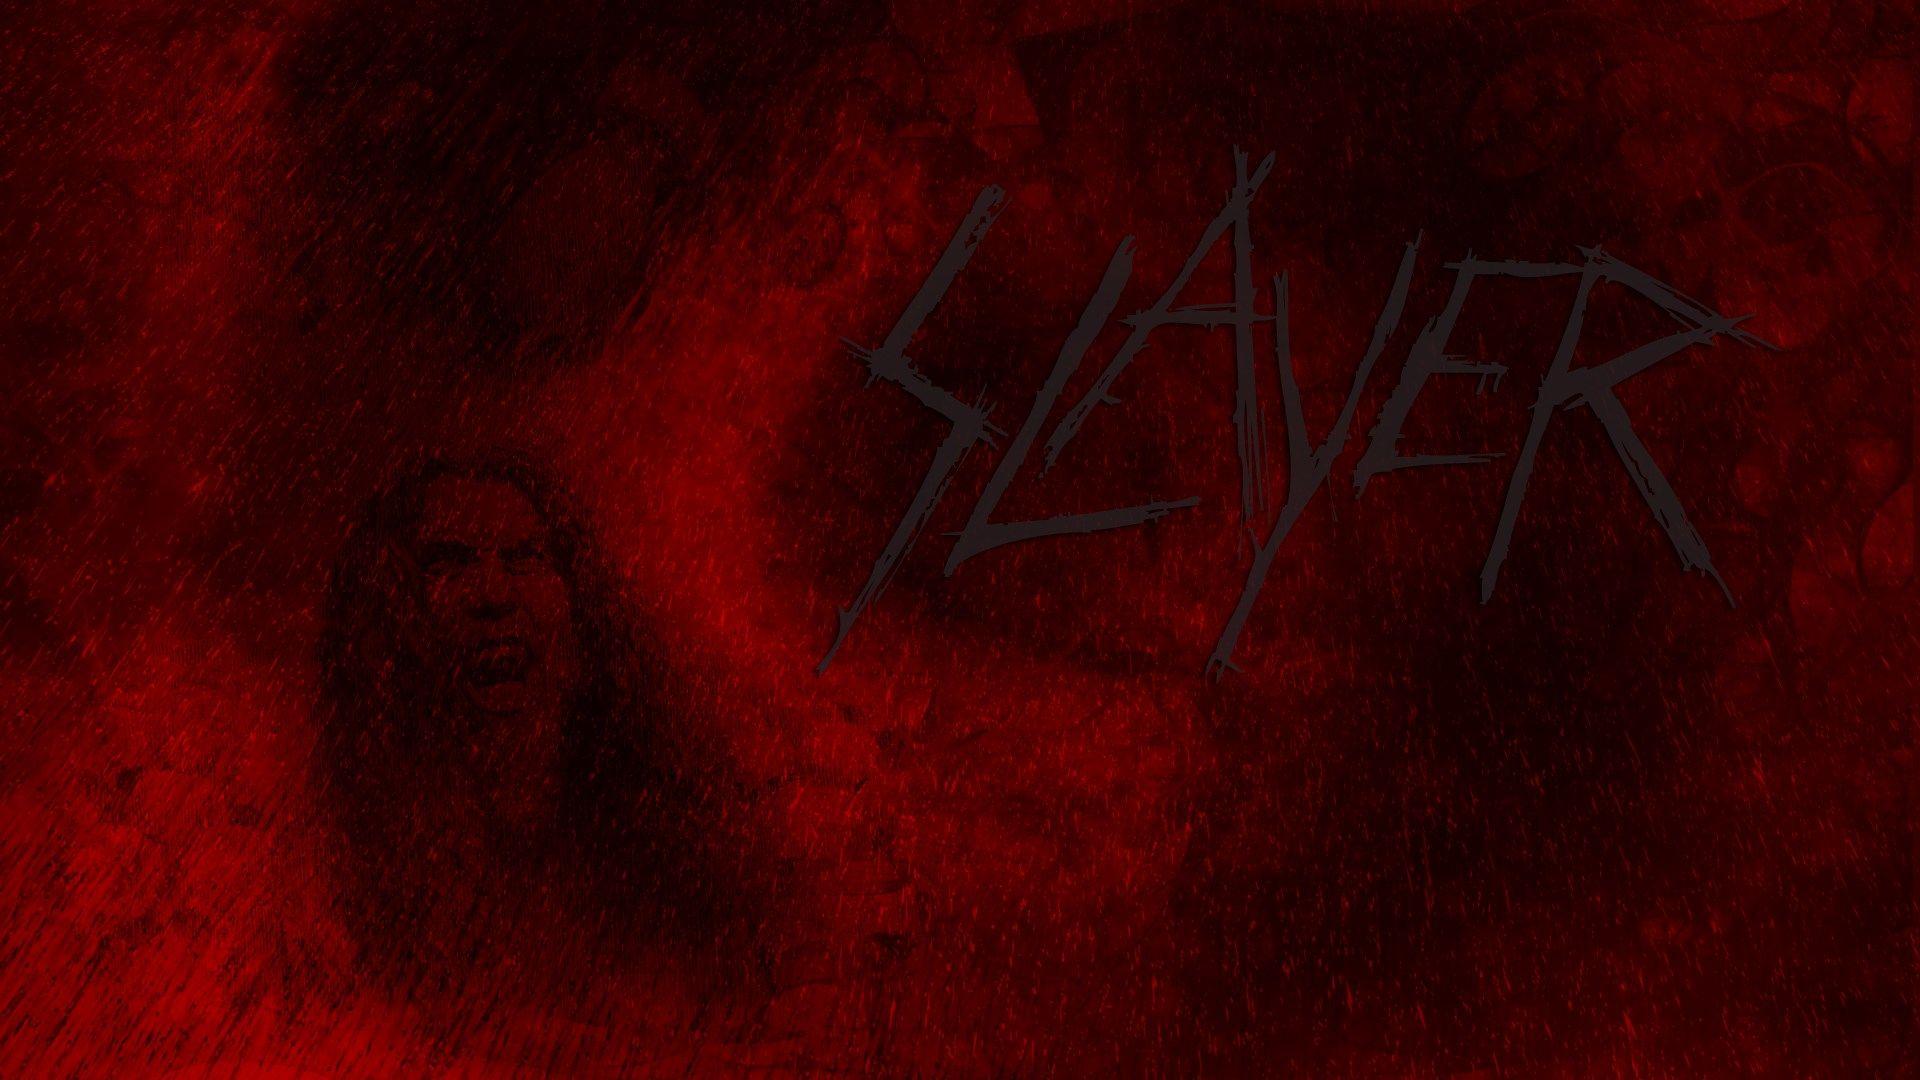 Slayer Band